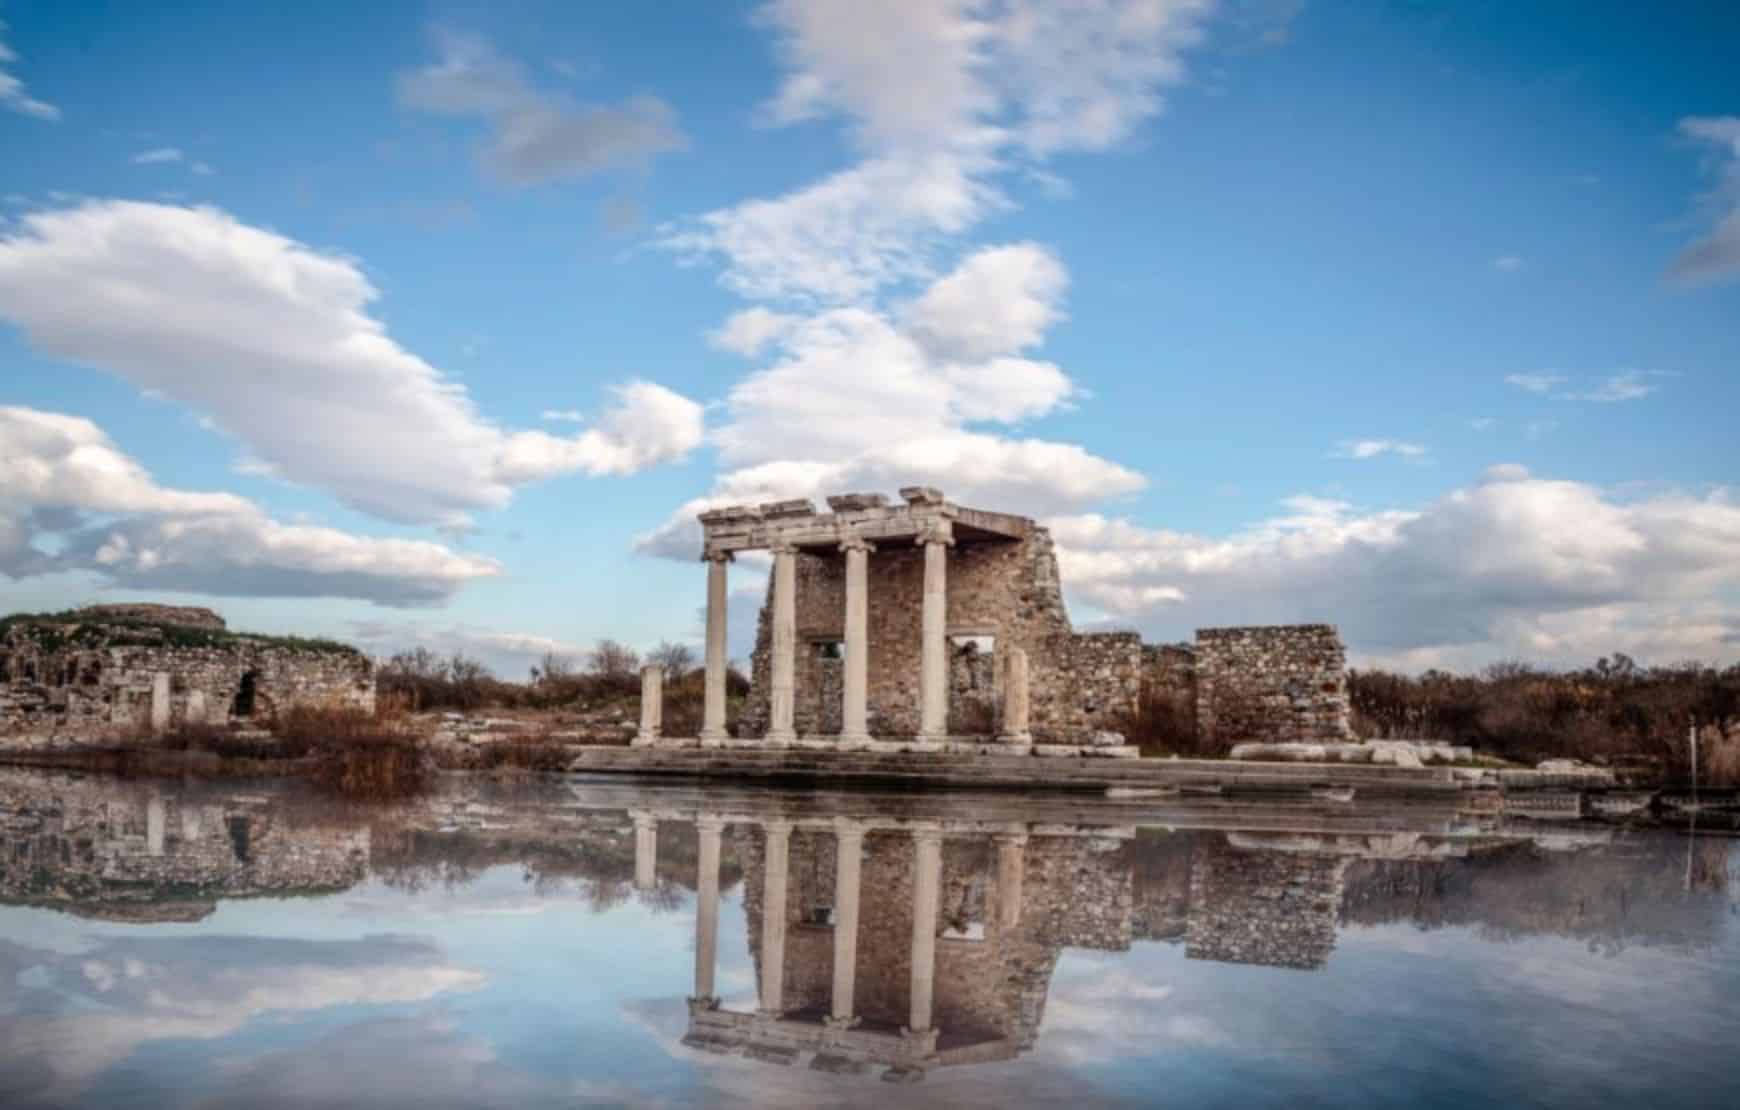 Priene, Miletus and Didyma Private Tour from Kusadasi - Miletus Ancient City